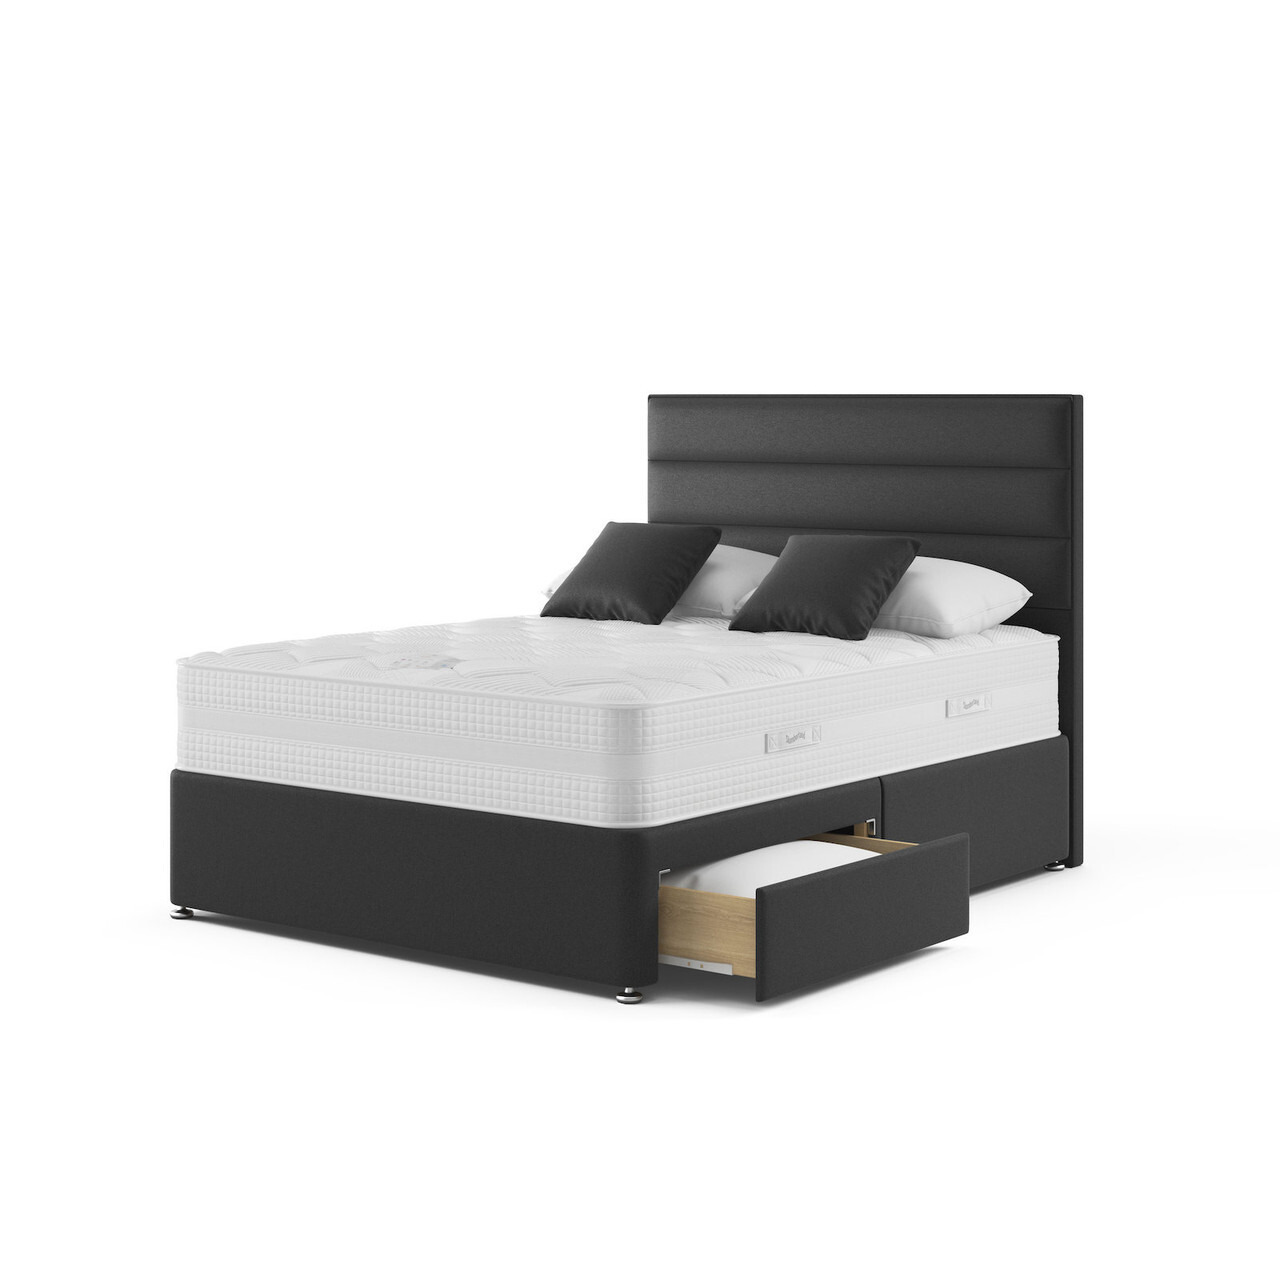 Slumberland Eco Solutions 2200 Divan Bed Set - image 1